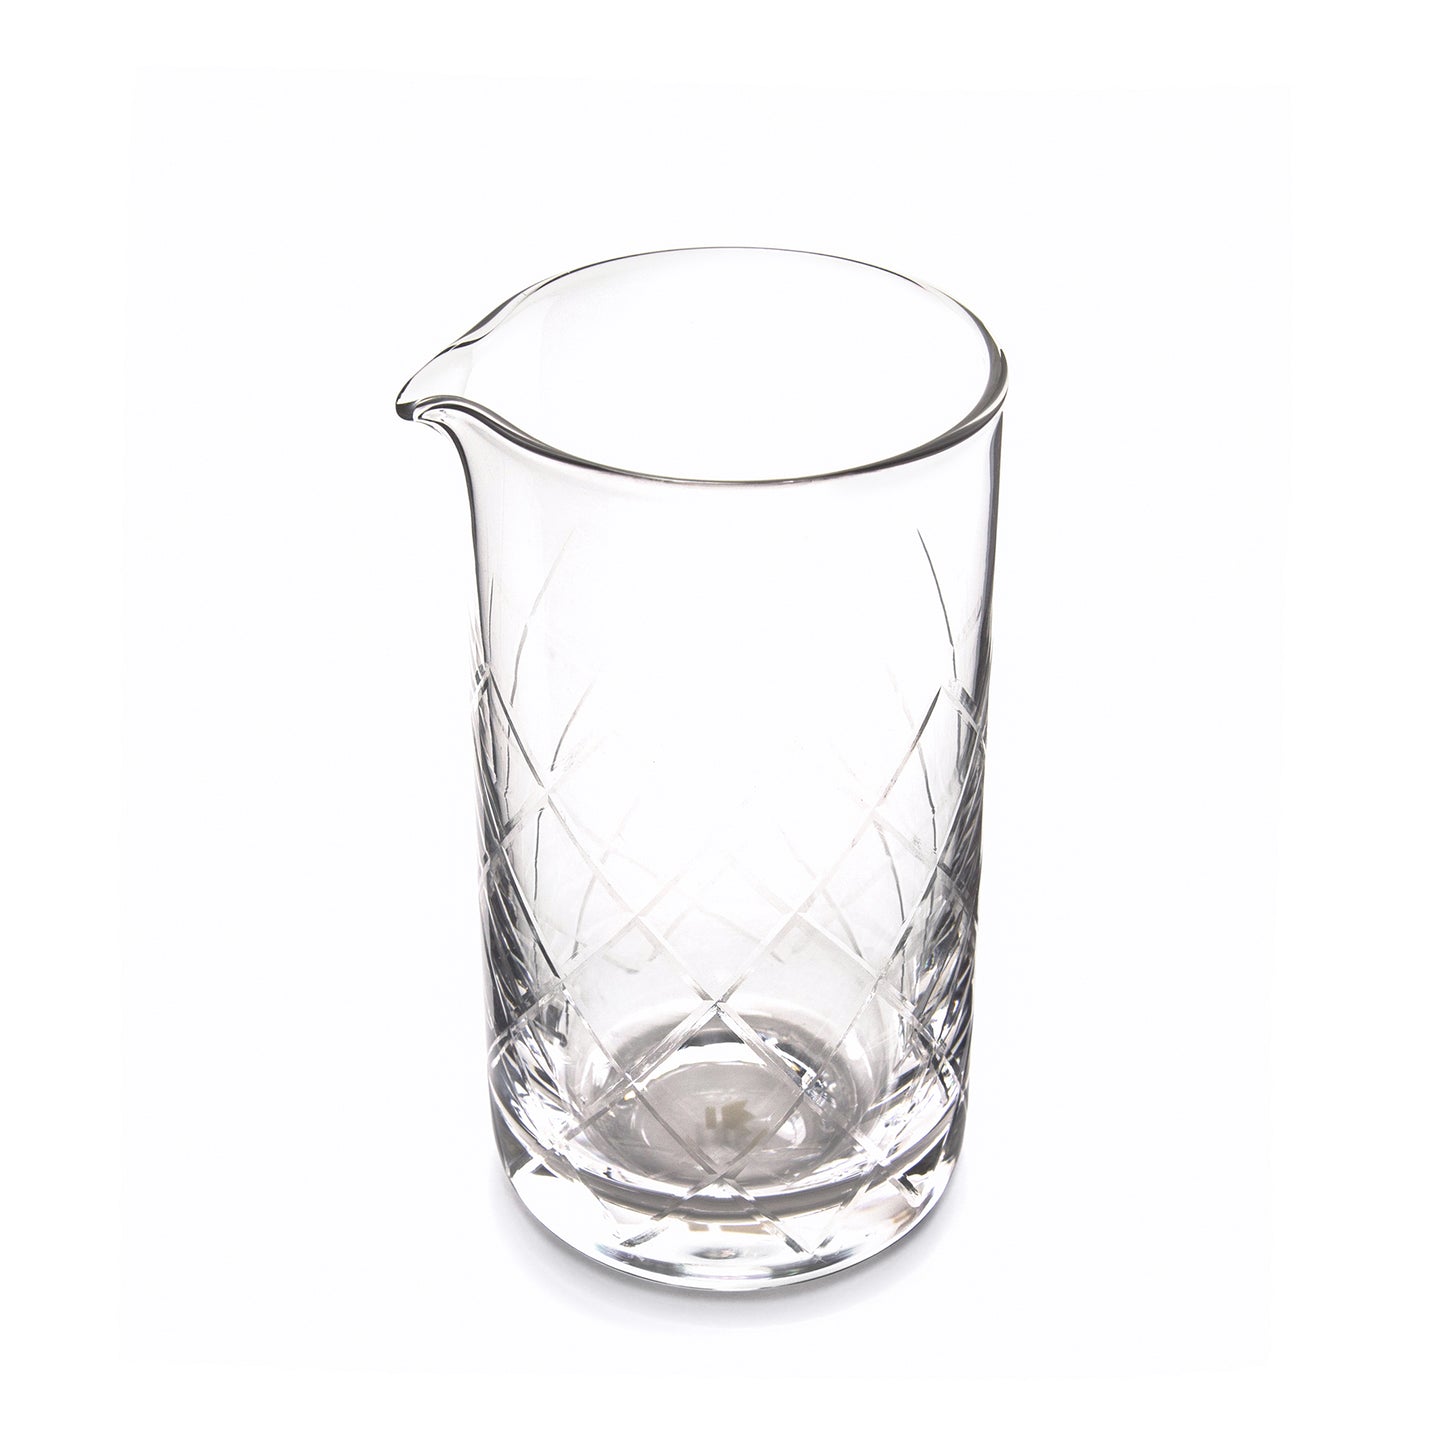 YARAI® MIXING GLASS, SEAMLESS, LARGE / 675ml (23oz) / FLAT BASE